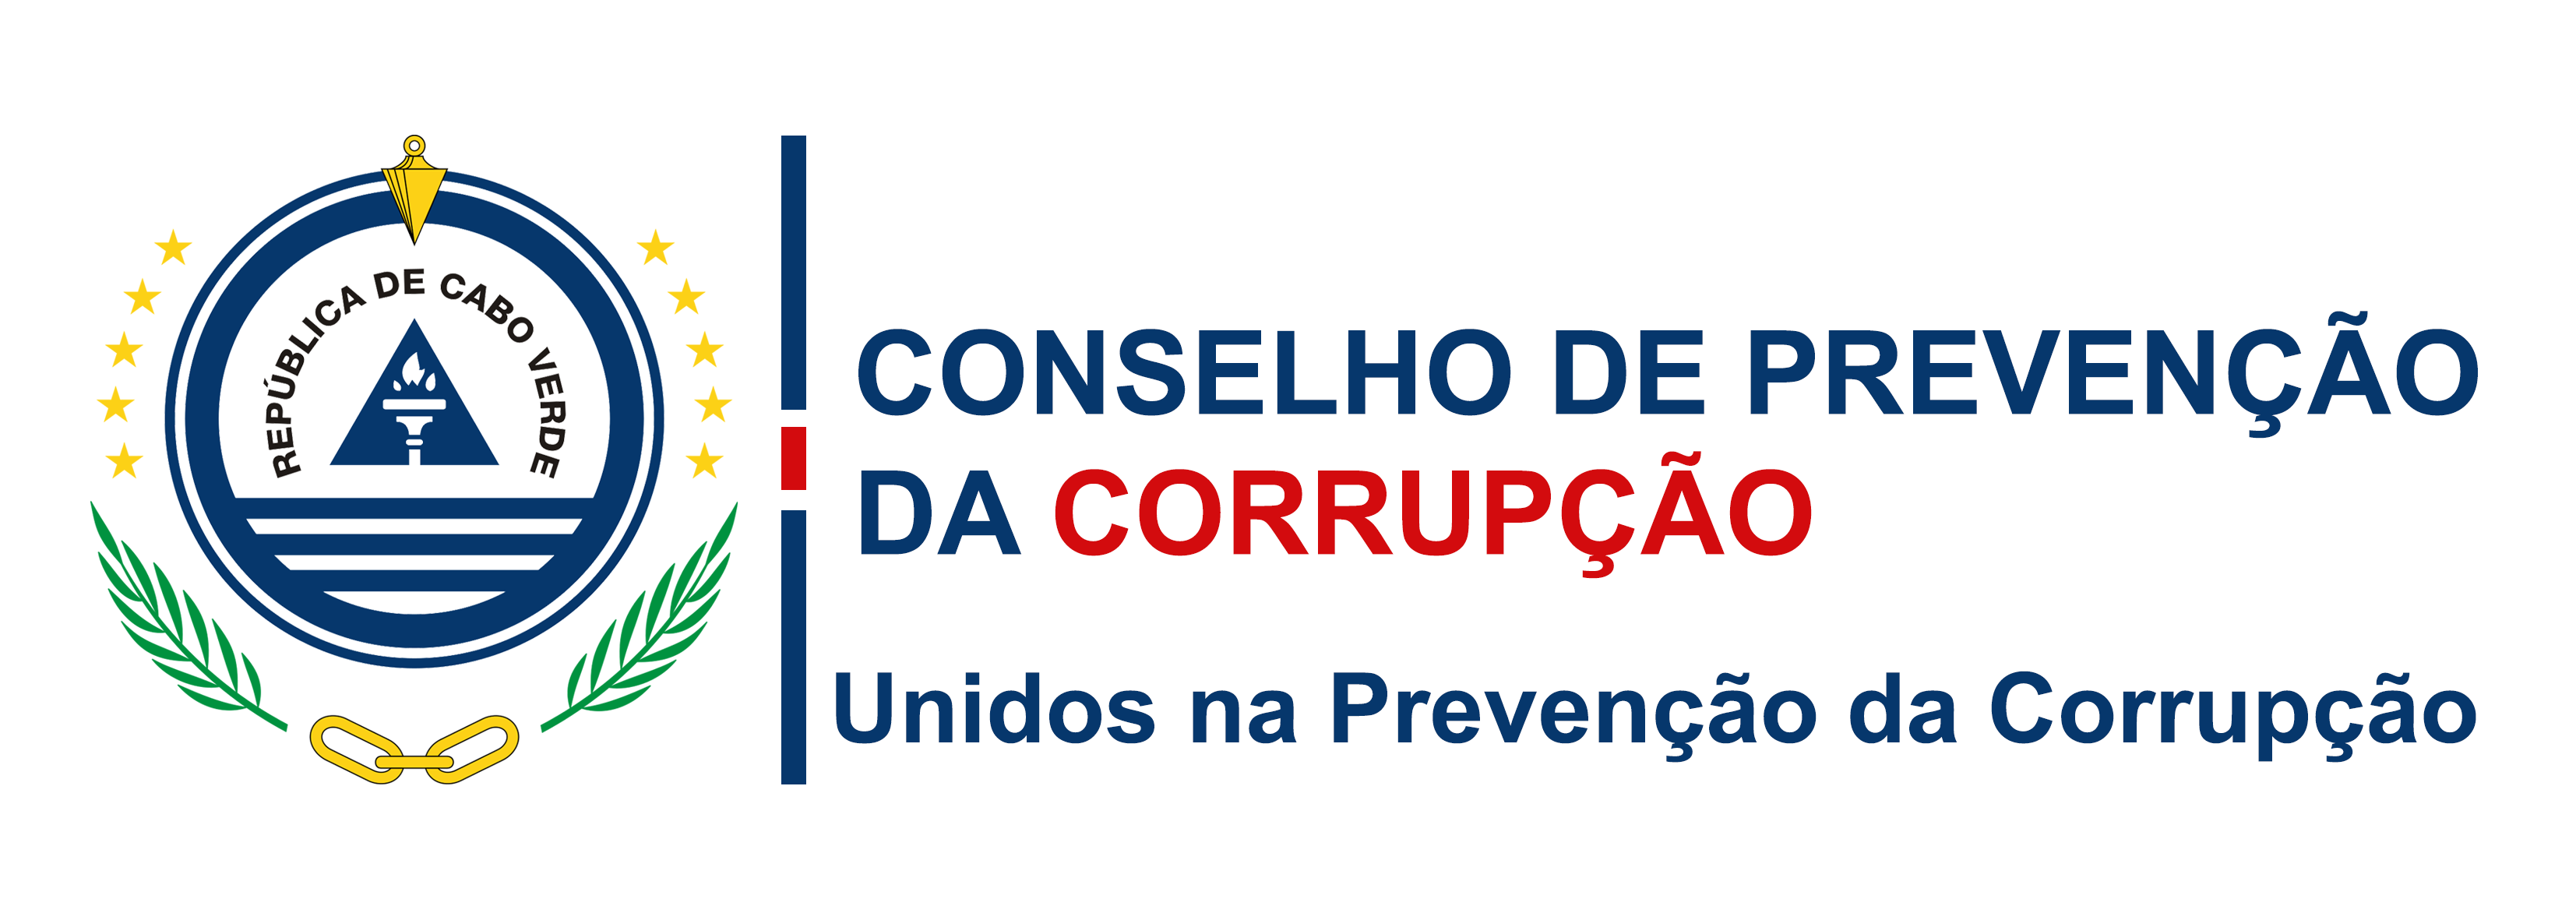 Conselho de Prevenção da Corrupção